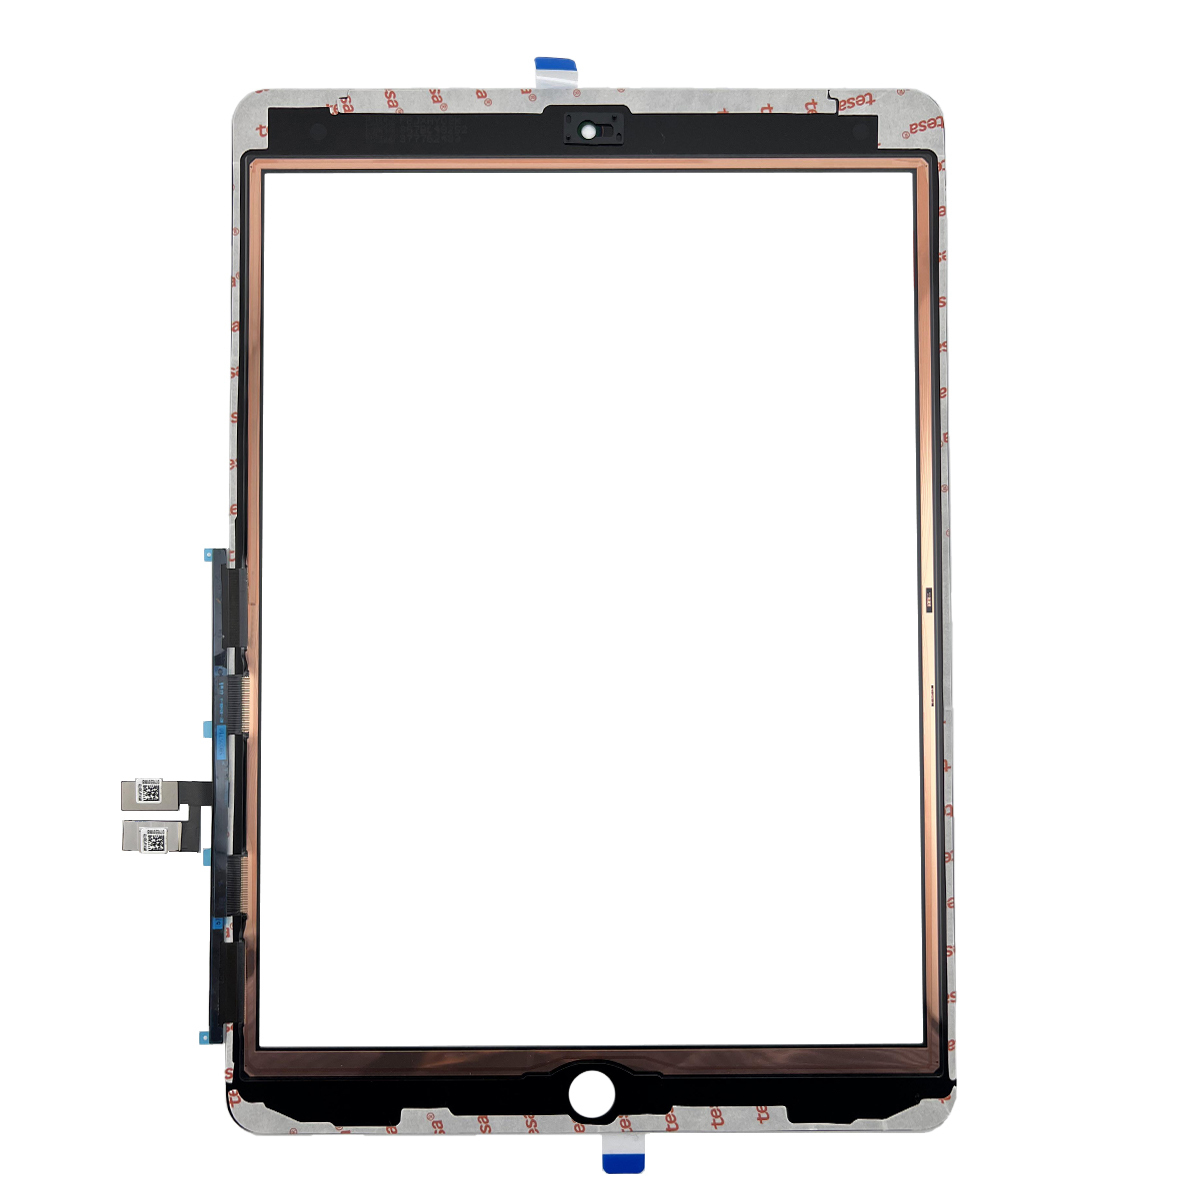 即日発送! iPad9 第9世代 A2602 A2603 A2604 A2605 フロントパネル 黒 タッチスクリーン交換 デジタイザ修理 リペアパーツ 画面 ガラス割れ_画像2